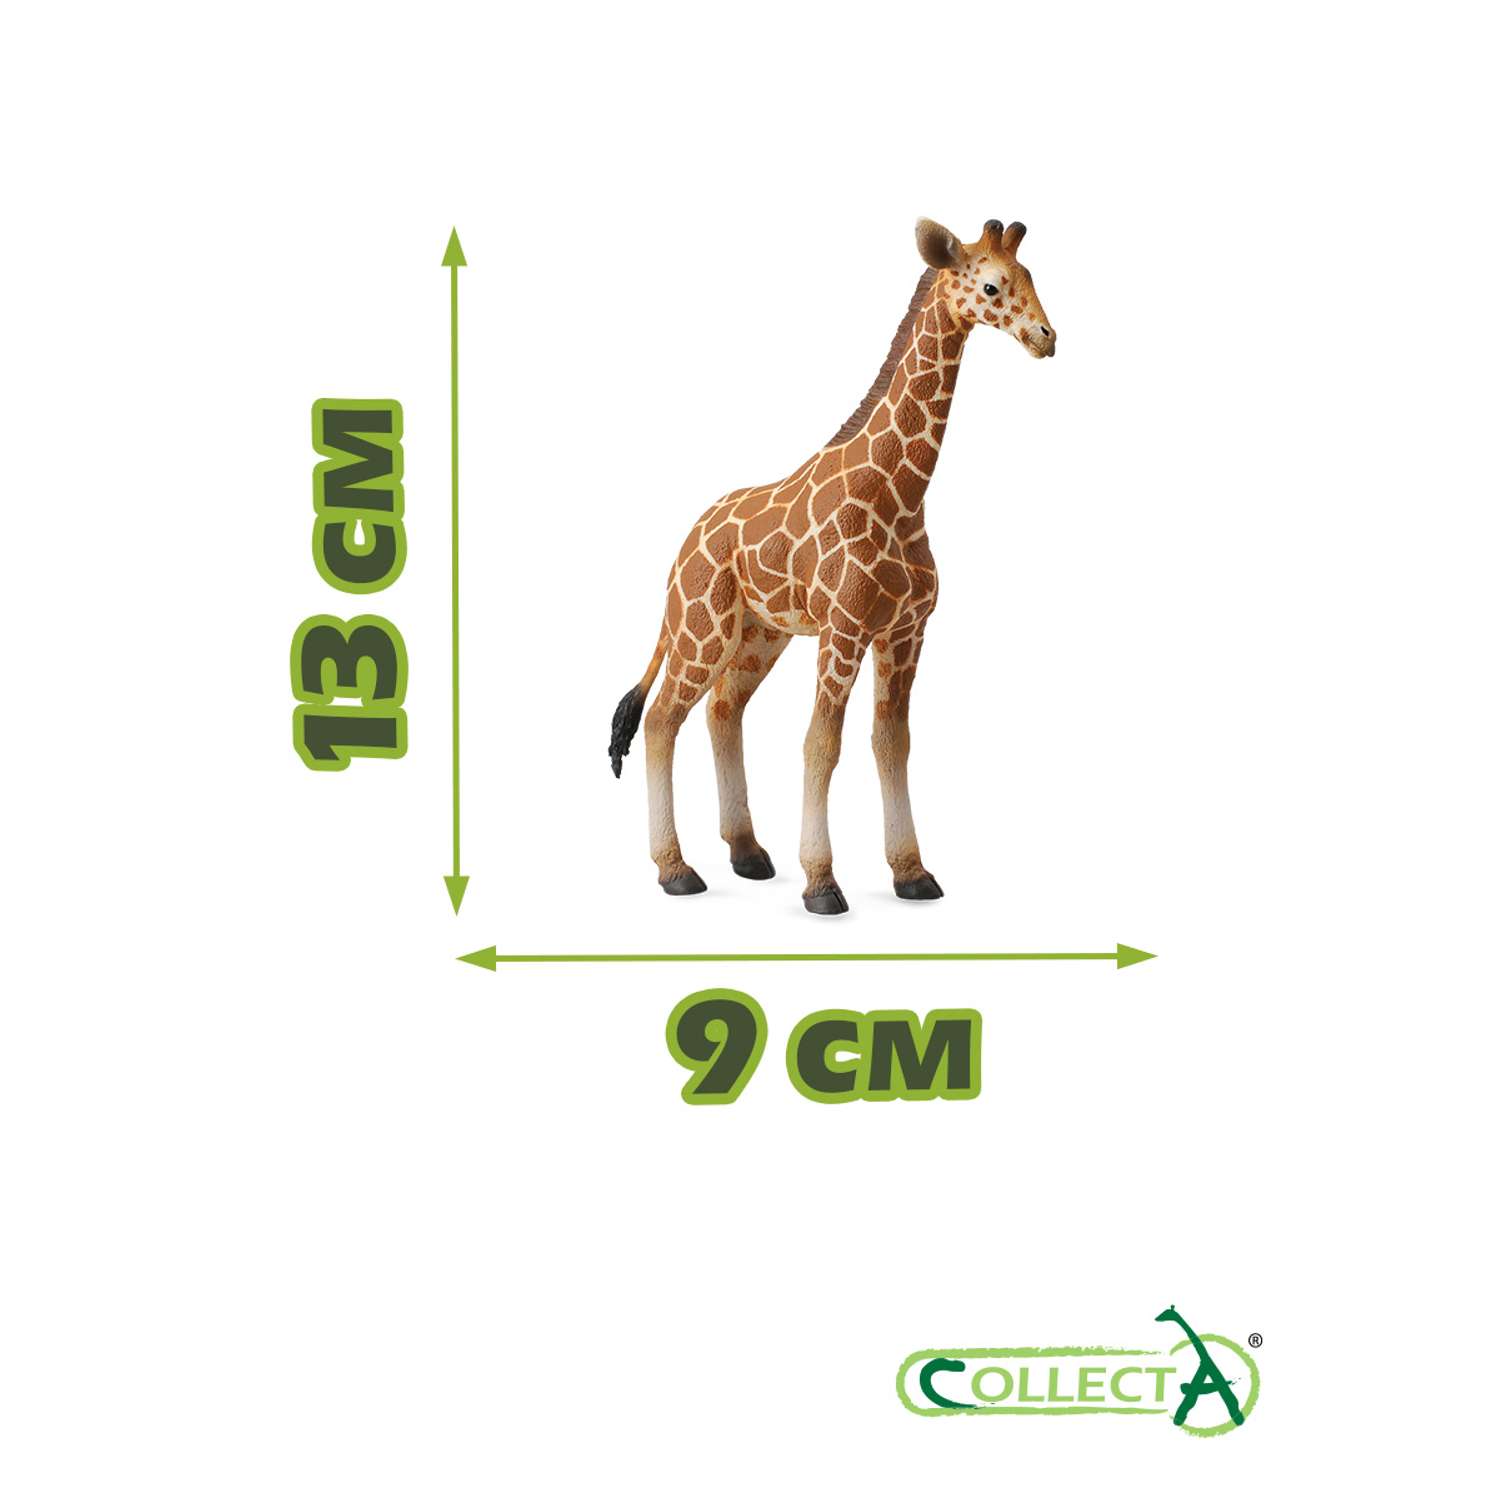 Фигурка животного Collecta Жеребенок Сетчатого Жирафа - фото 2